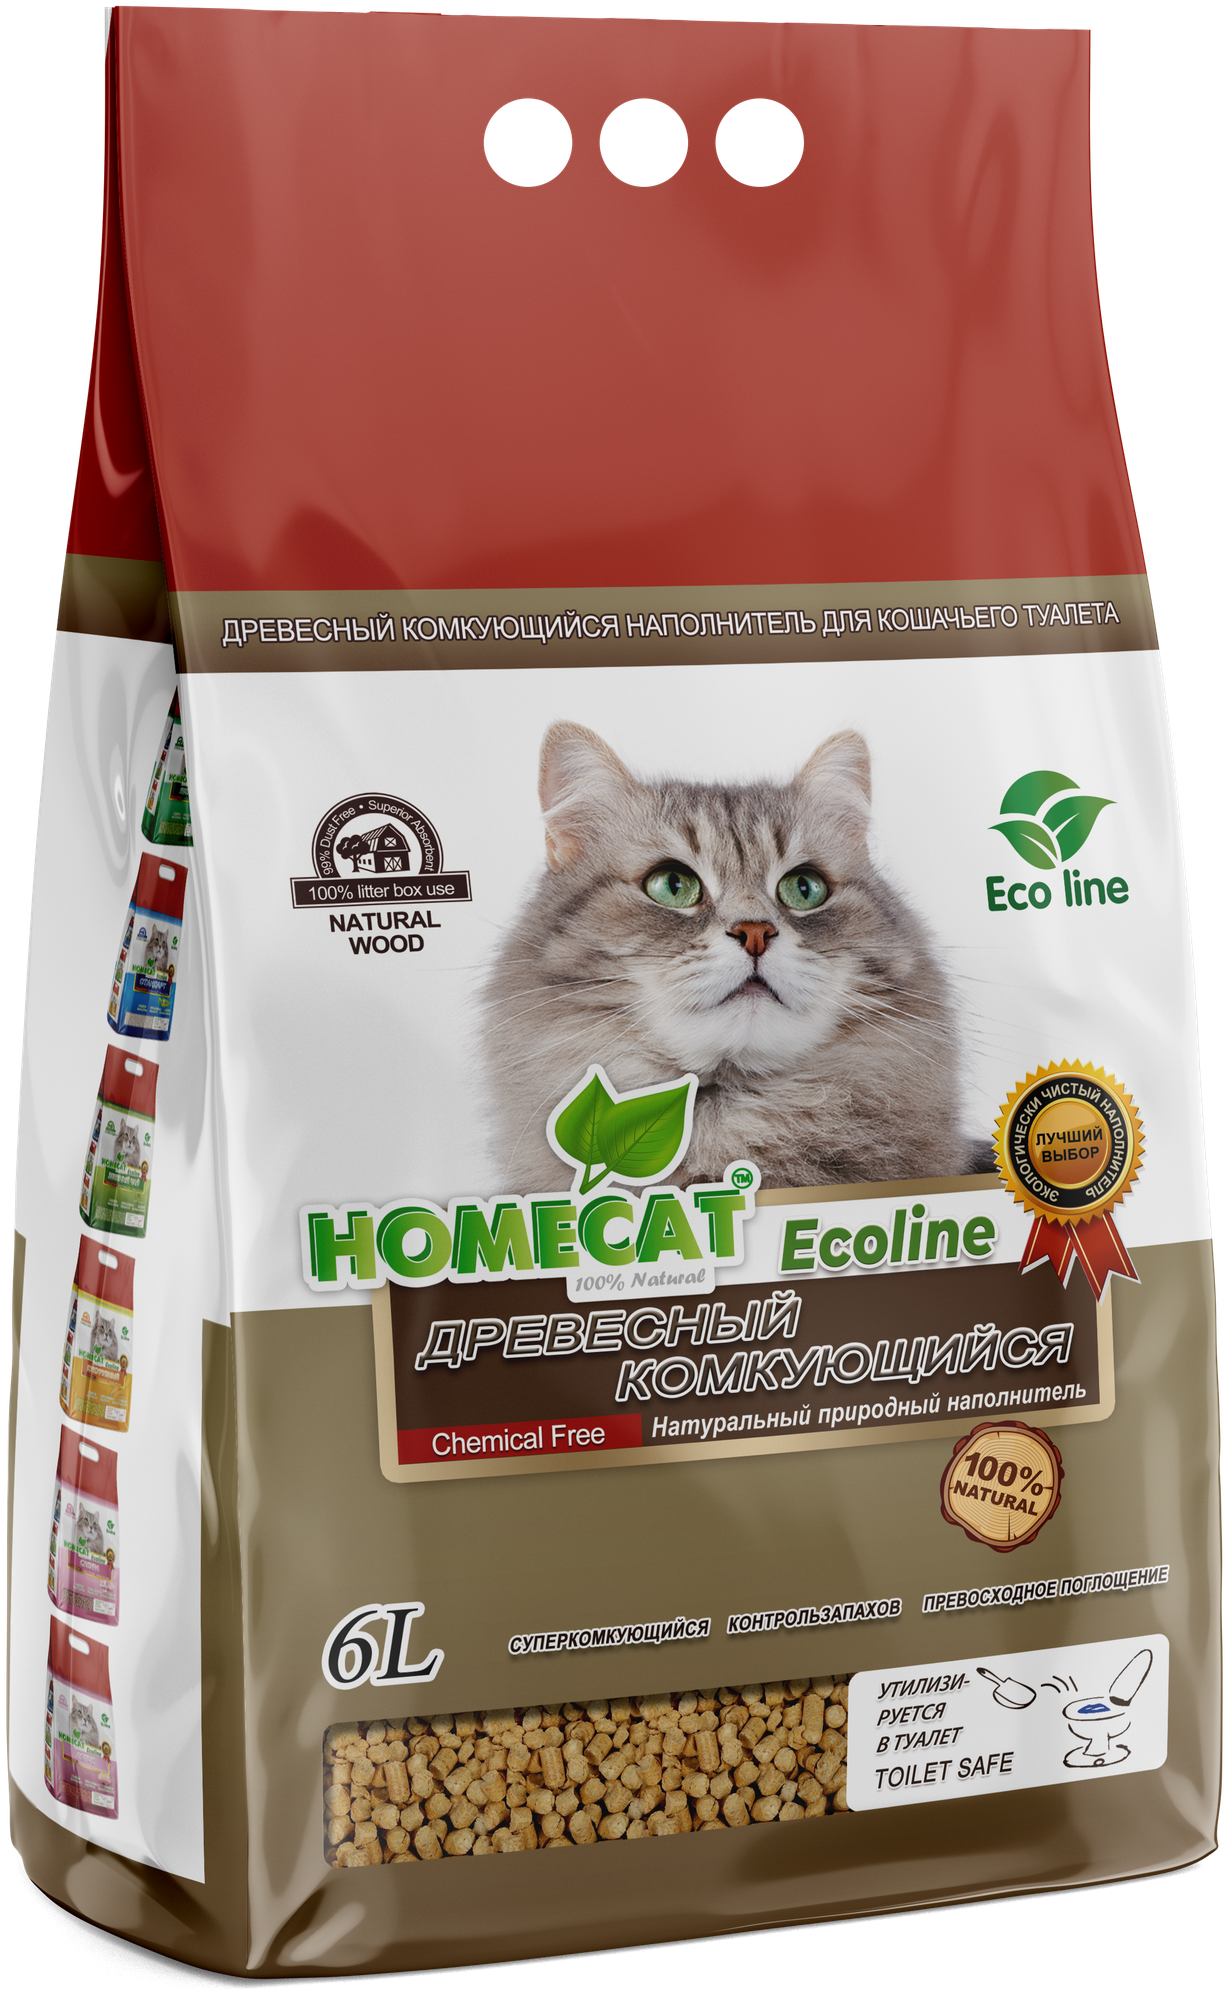 HOMECAT Ecoline Наполнитель для кошачьих туалетов Древесный Комкующийся 21 кг. / 6 л.